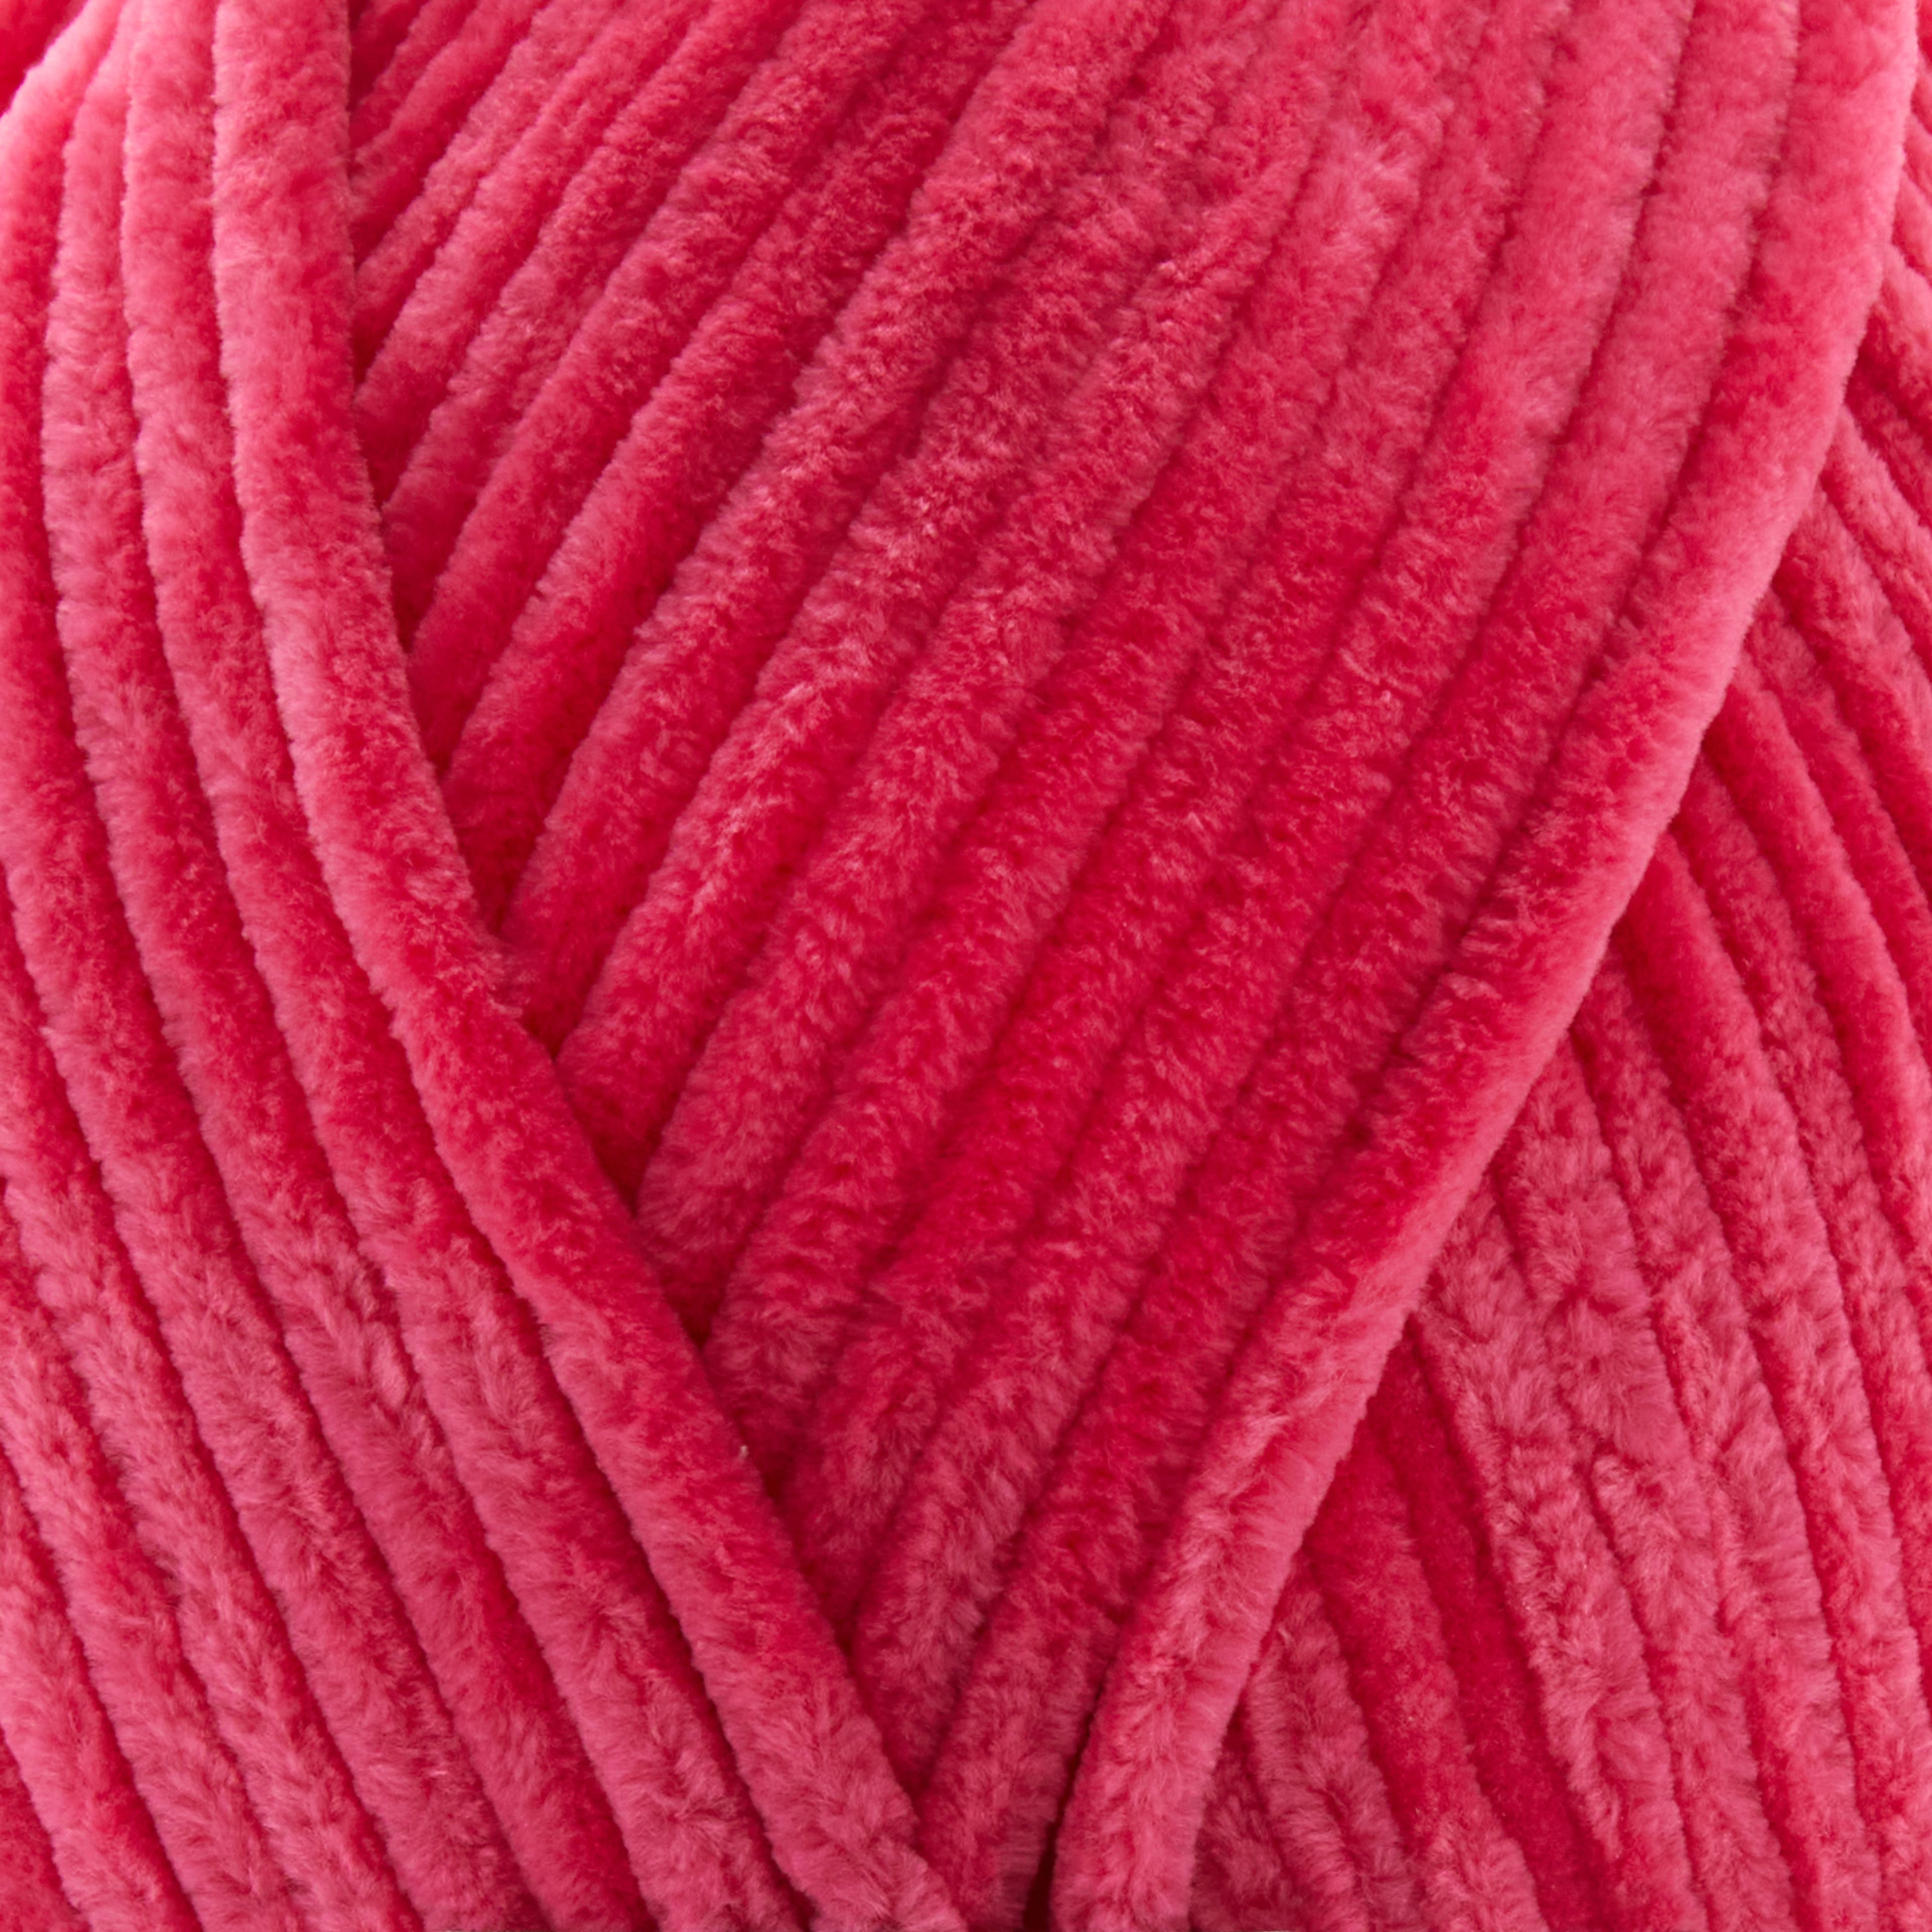 Sweet Snuggles Lite™ Multi Yarn by Loops & Threads